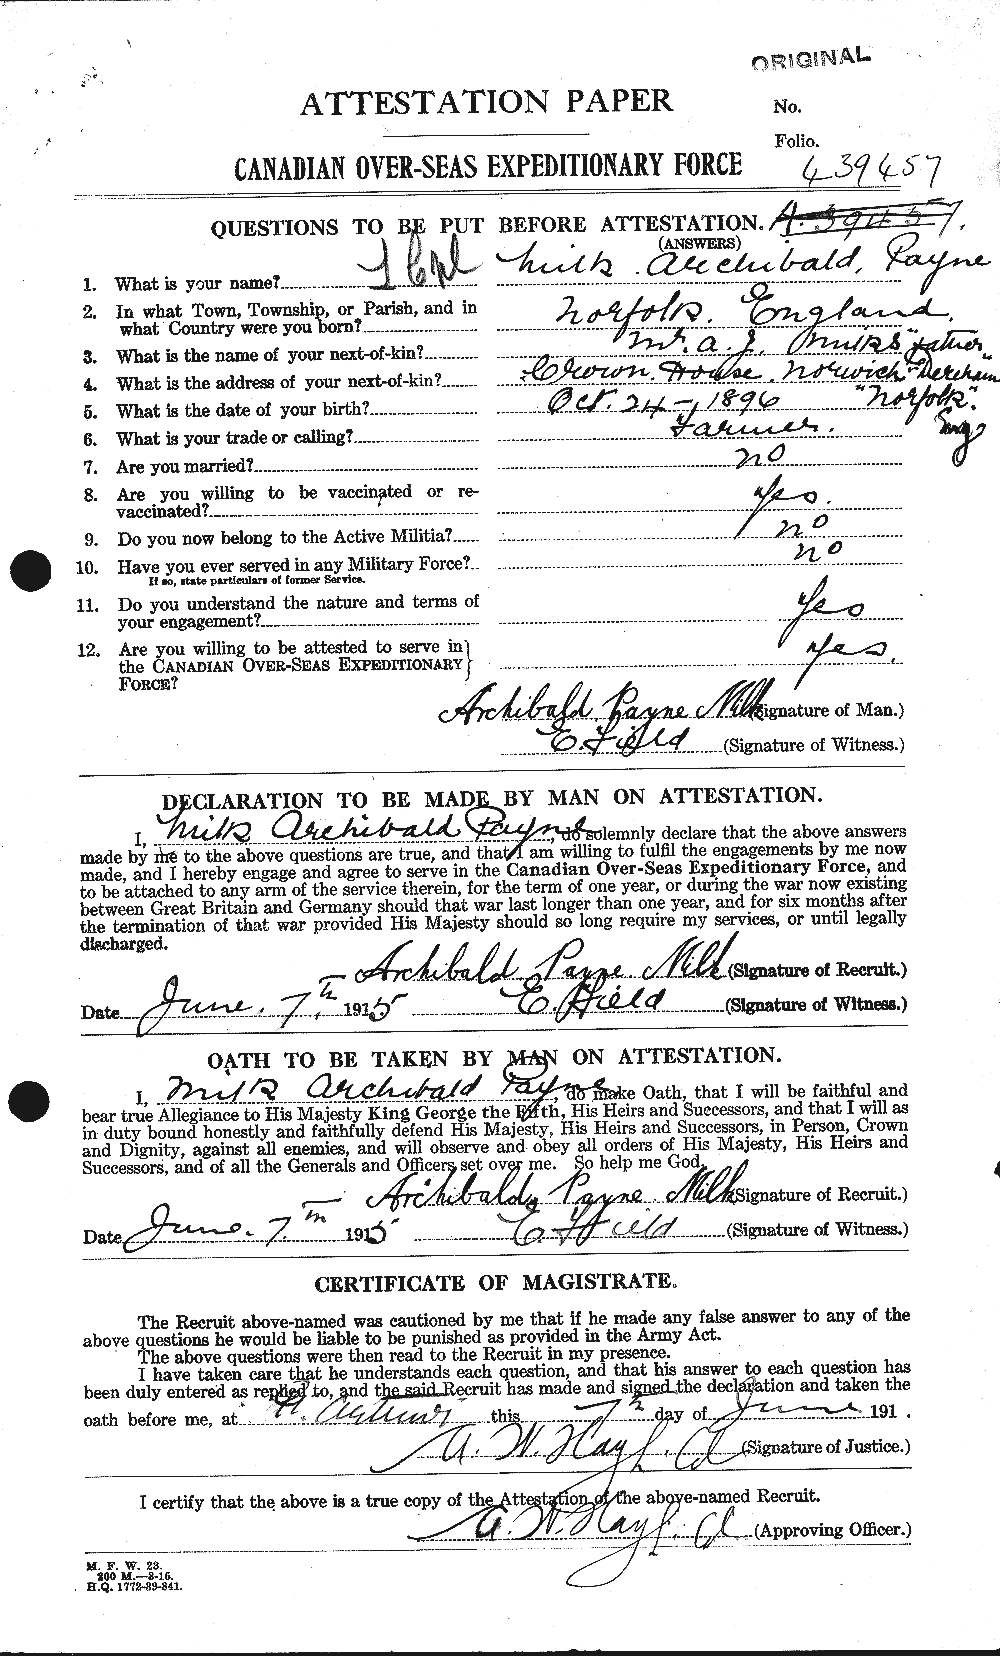 Dossiers du Personnel de la Première Guerre mondiale - CEC 495148a